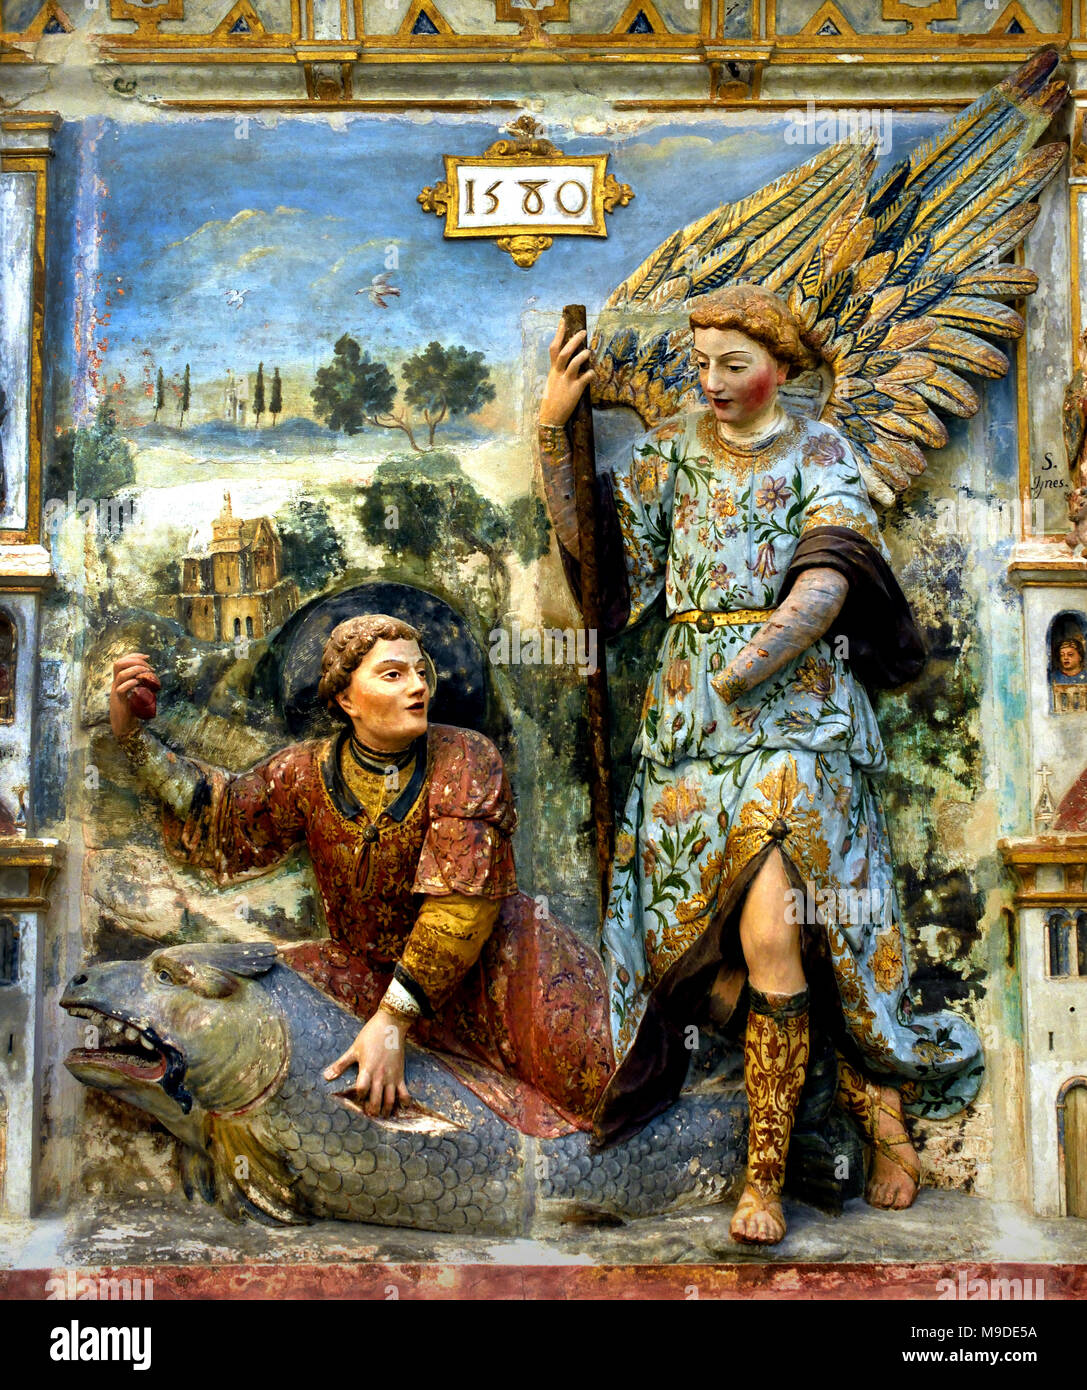 Pala, Tobias e Saint Raphael 1580 del XVI secolo il Portogallo, portoghese, Coimbra, (Mosteiro de Santa Clara - Monastero di Santa Clara ) Foto Stock